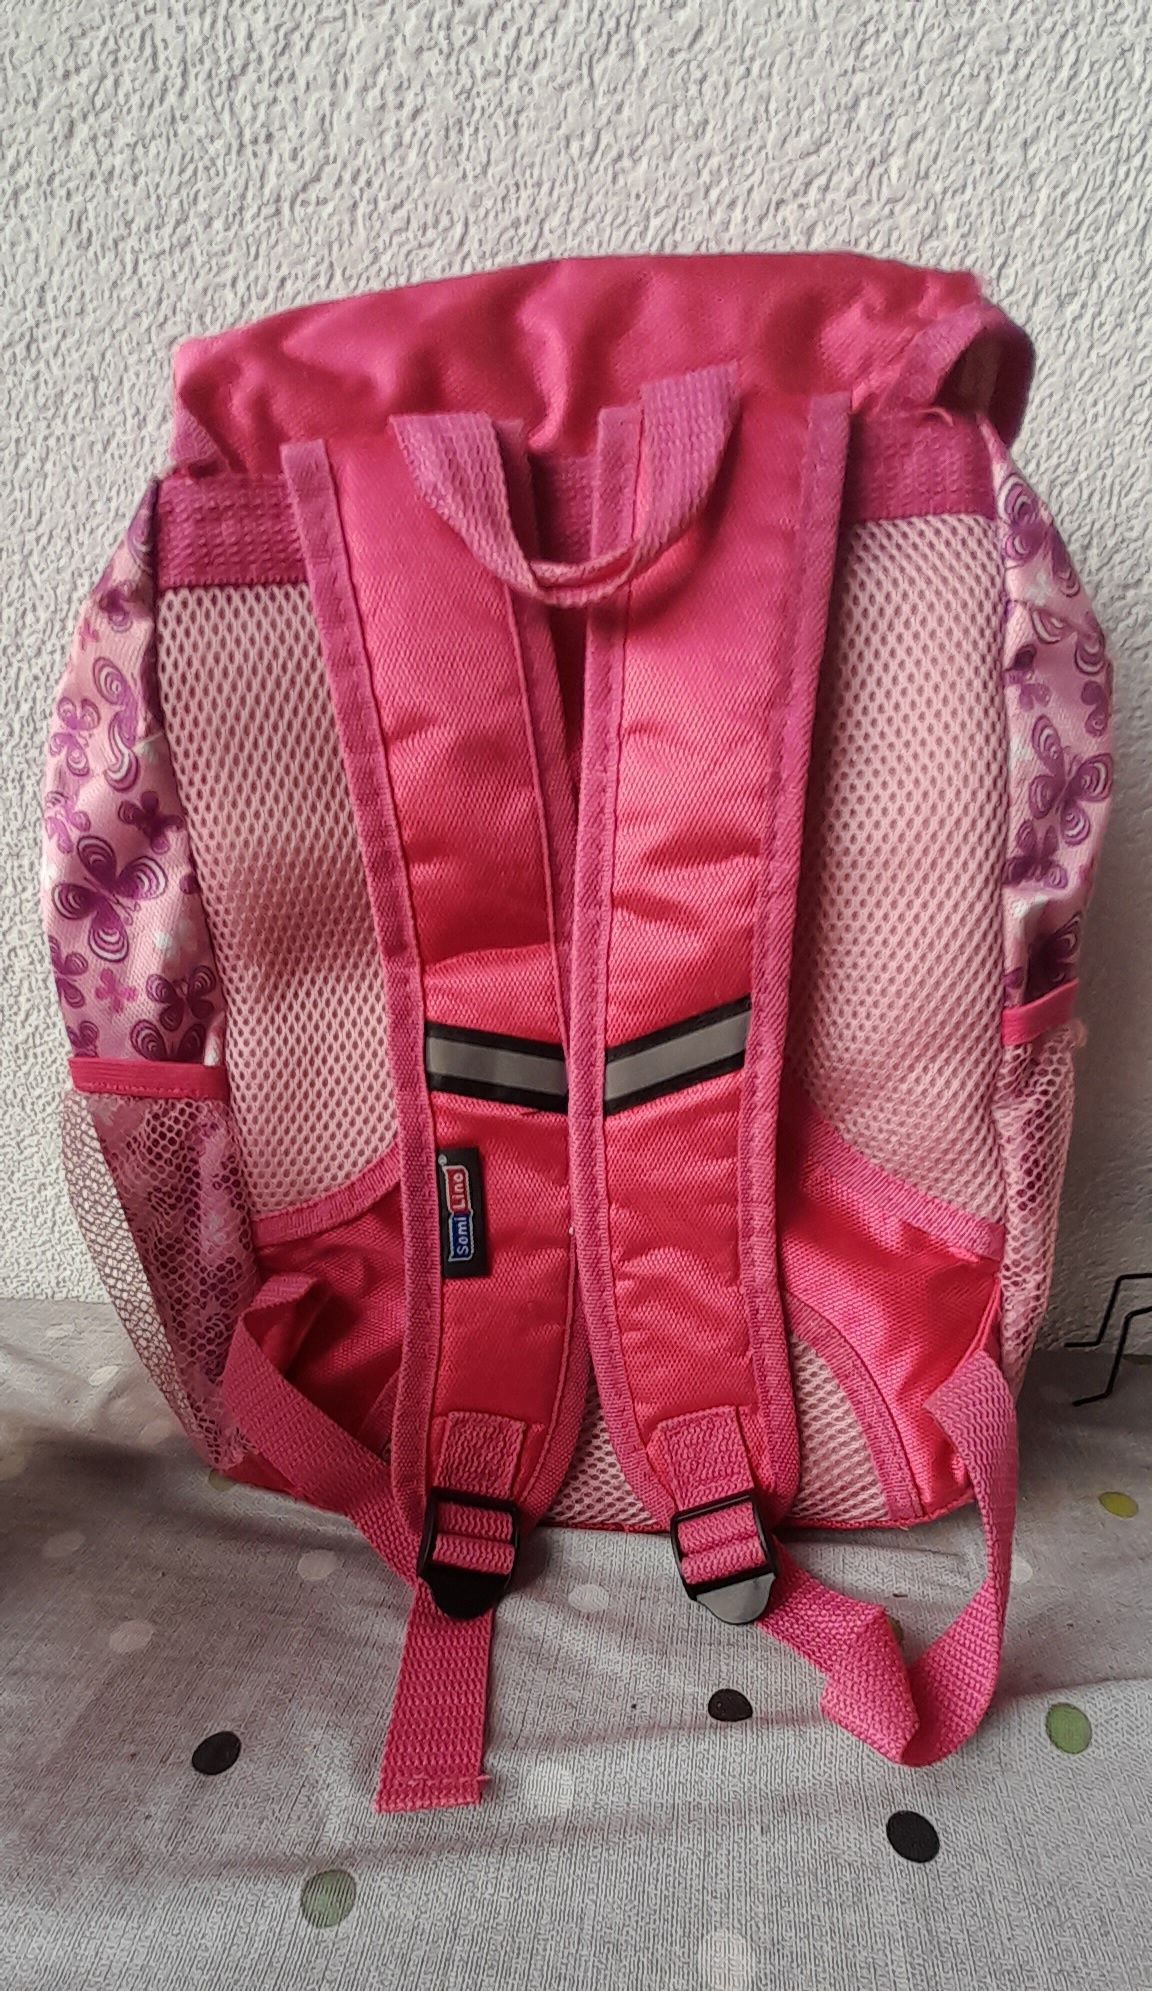 Plecak różowy motylki dla dziewczynki do szkoły